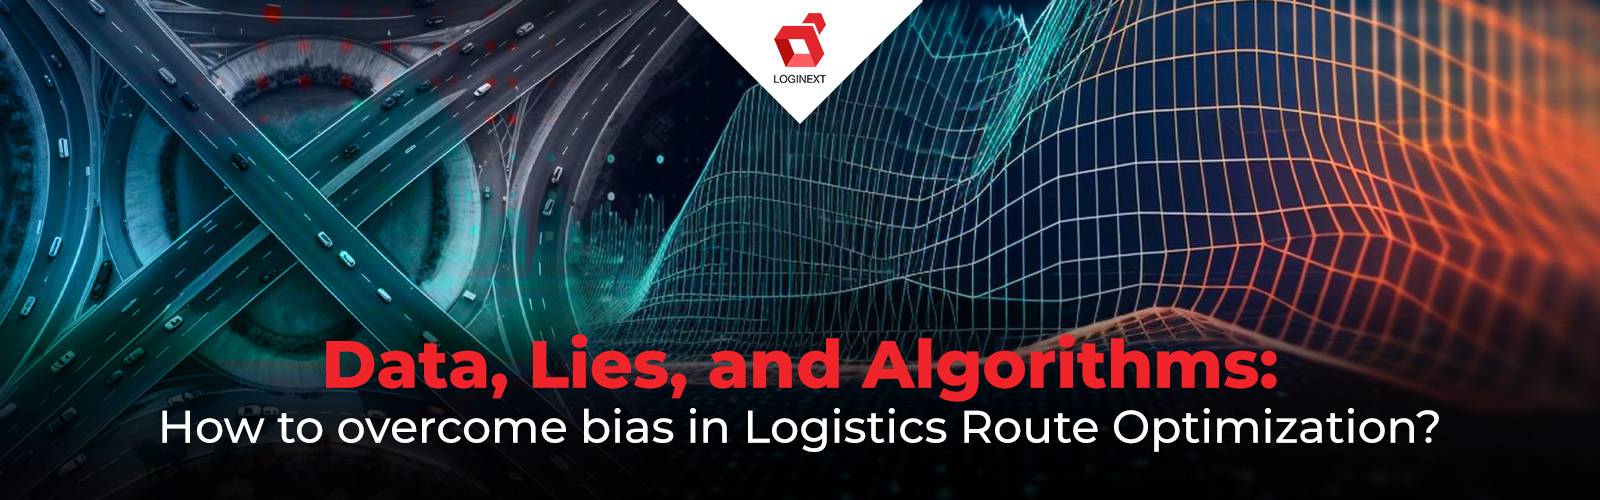 Overcome bias in Logistics Route Optimization